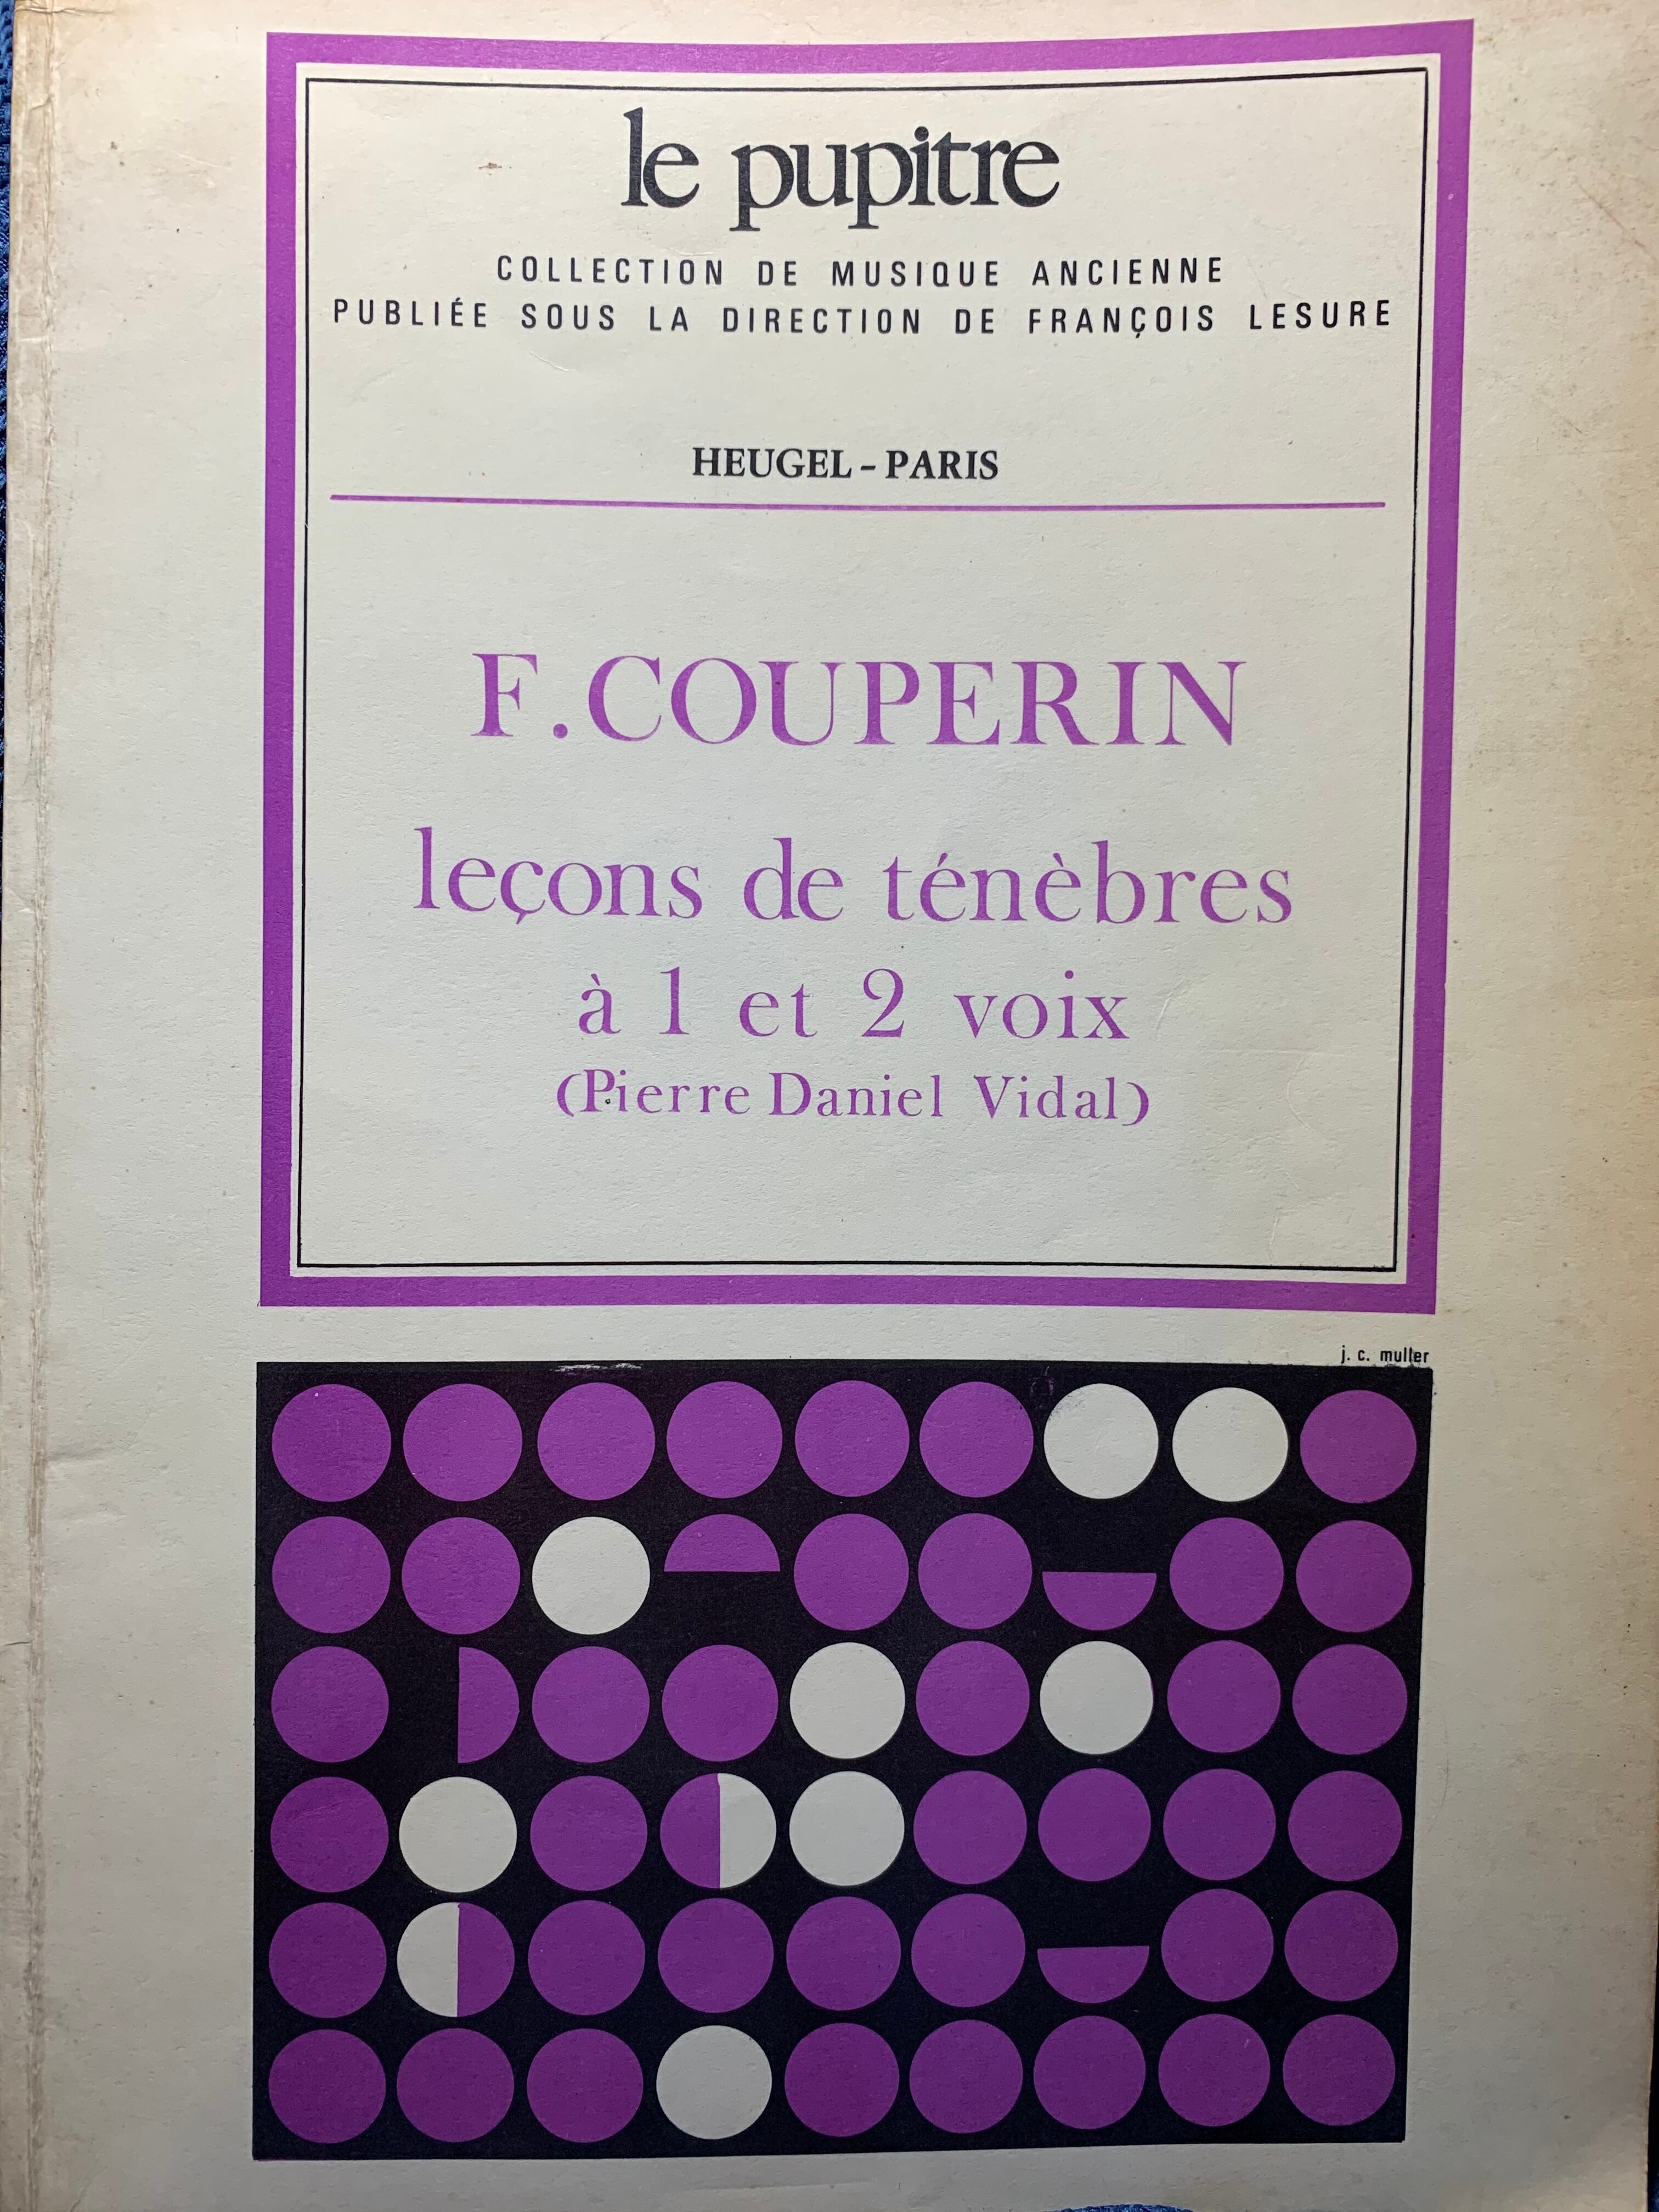 Tale　Leçons　Birds'　tenebres　et　1968年　Hengel-Paris　pupitre　voix　a　de　Collective